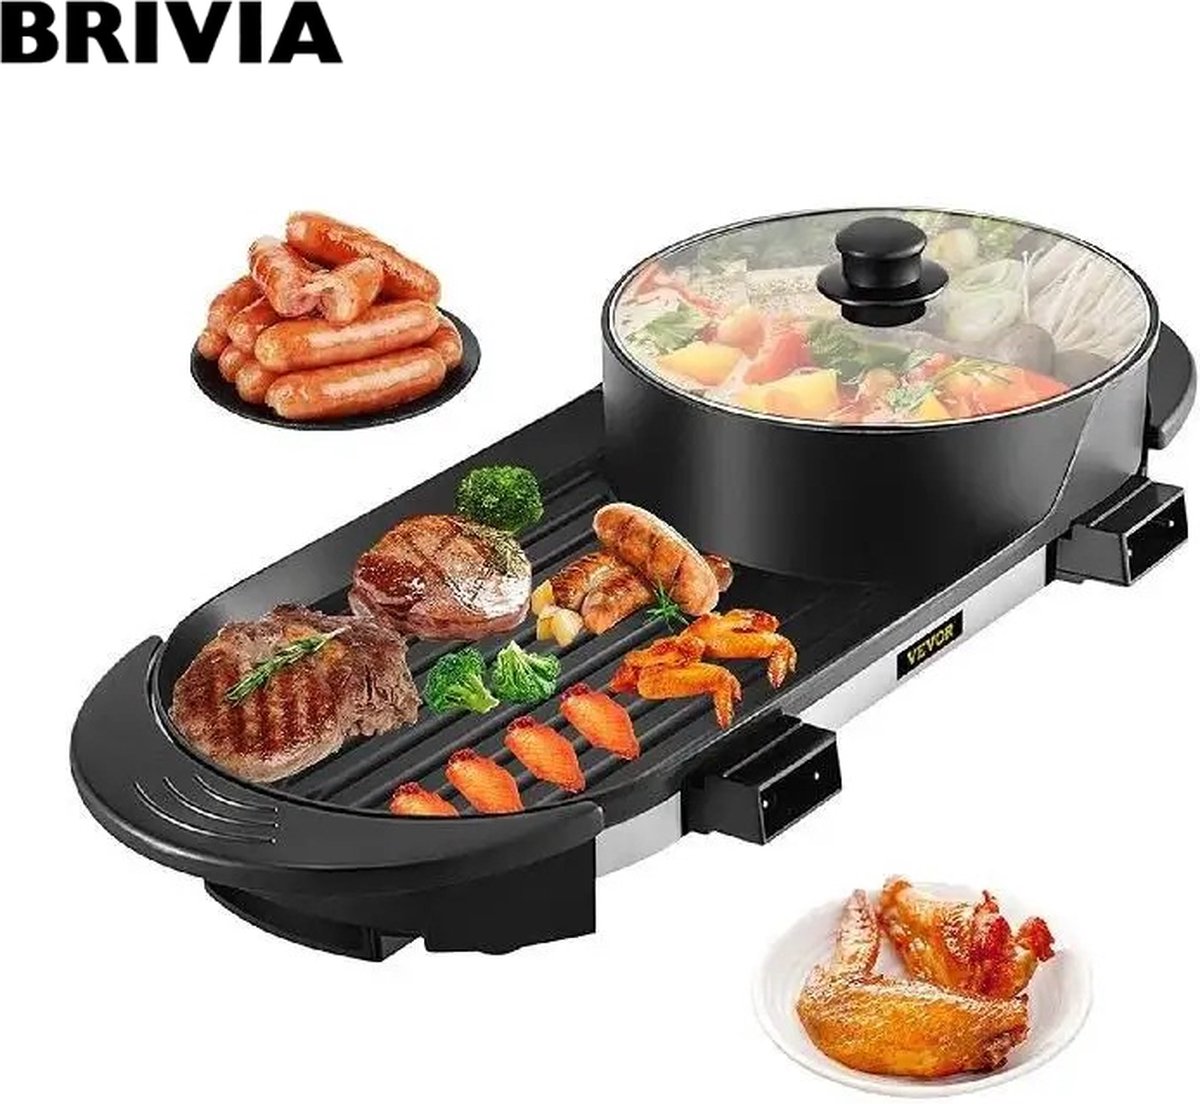 Brivia Grillplaat - BBQ - Pan - 2-in-1 - Grill apparaat voor op tafel - Gourmet - Anti-aanbaklaag - 67 centimeter - 5 Standen - 2200W